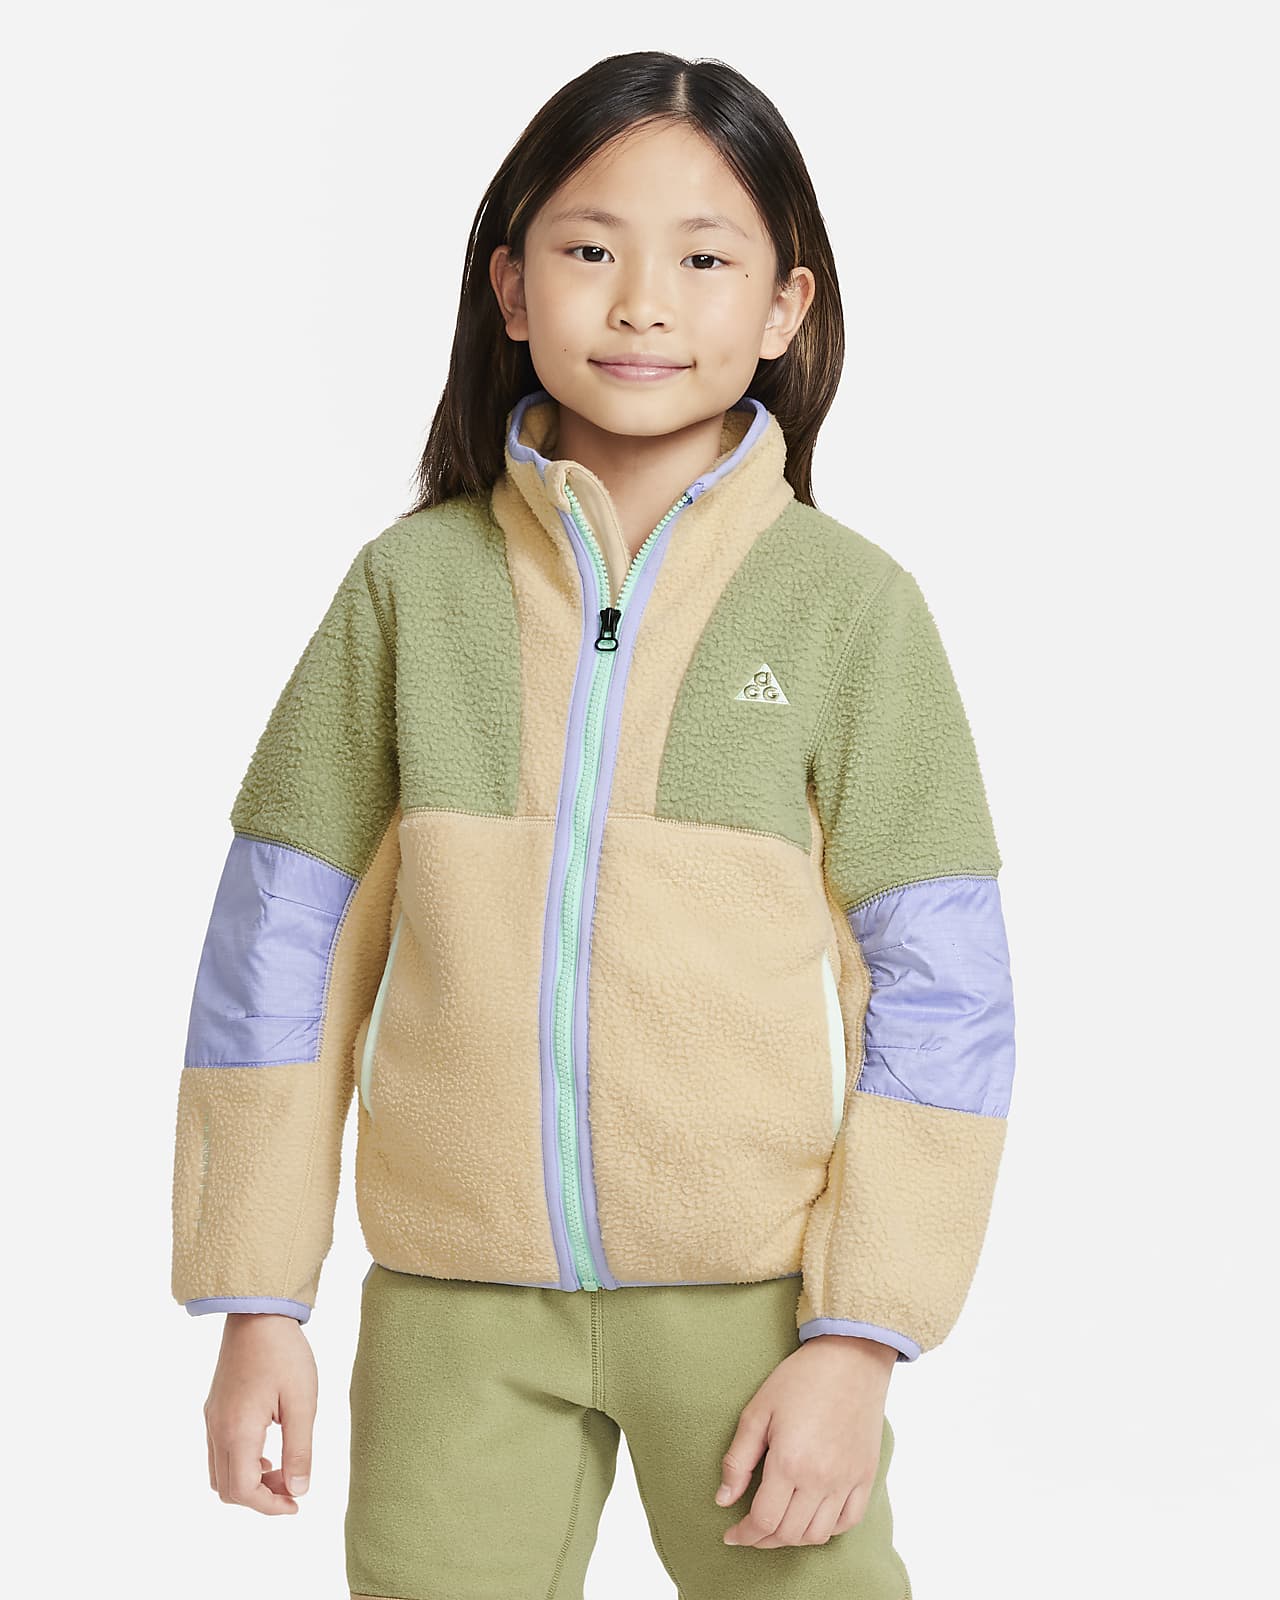 Polar Fleece Jacket - Niño/a pequeño/a. Nike